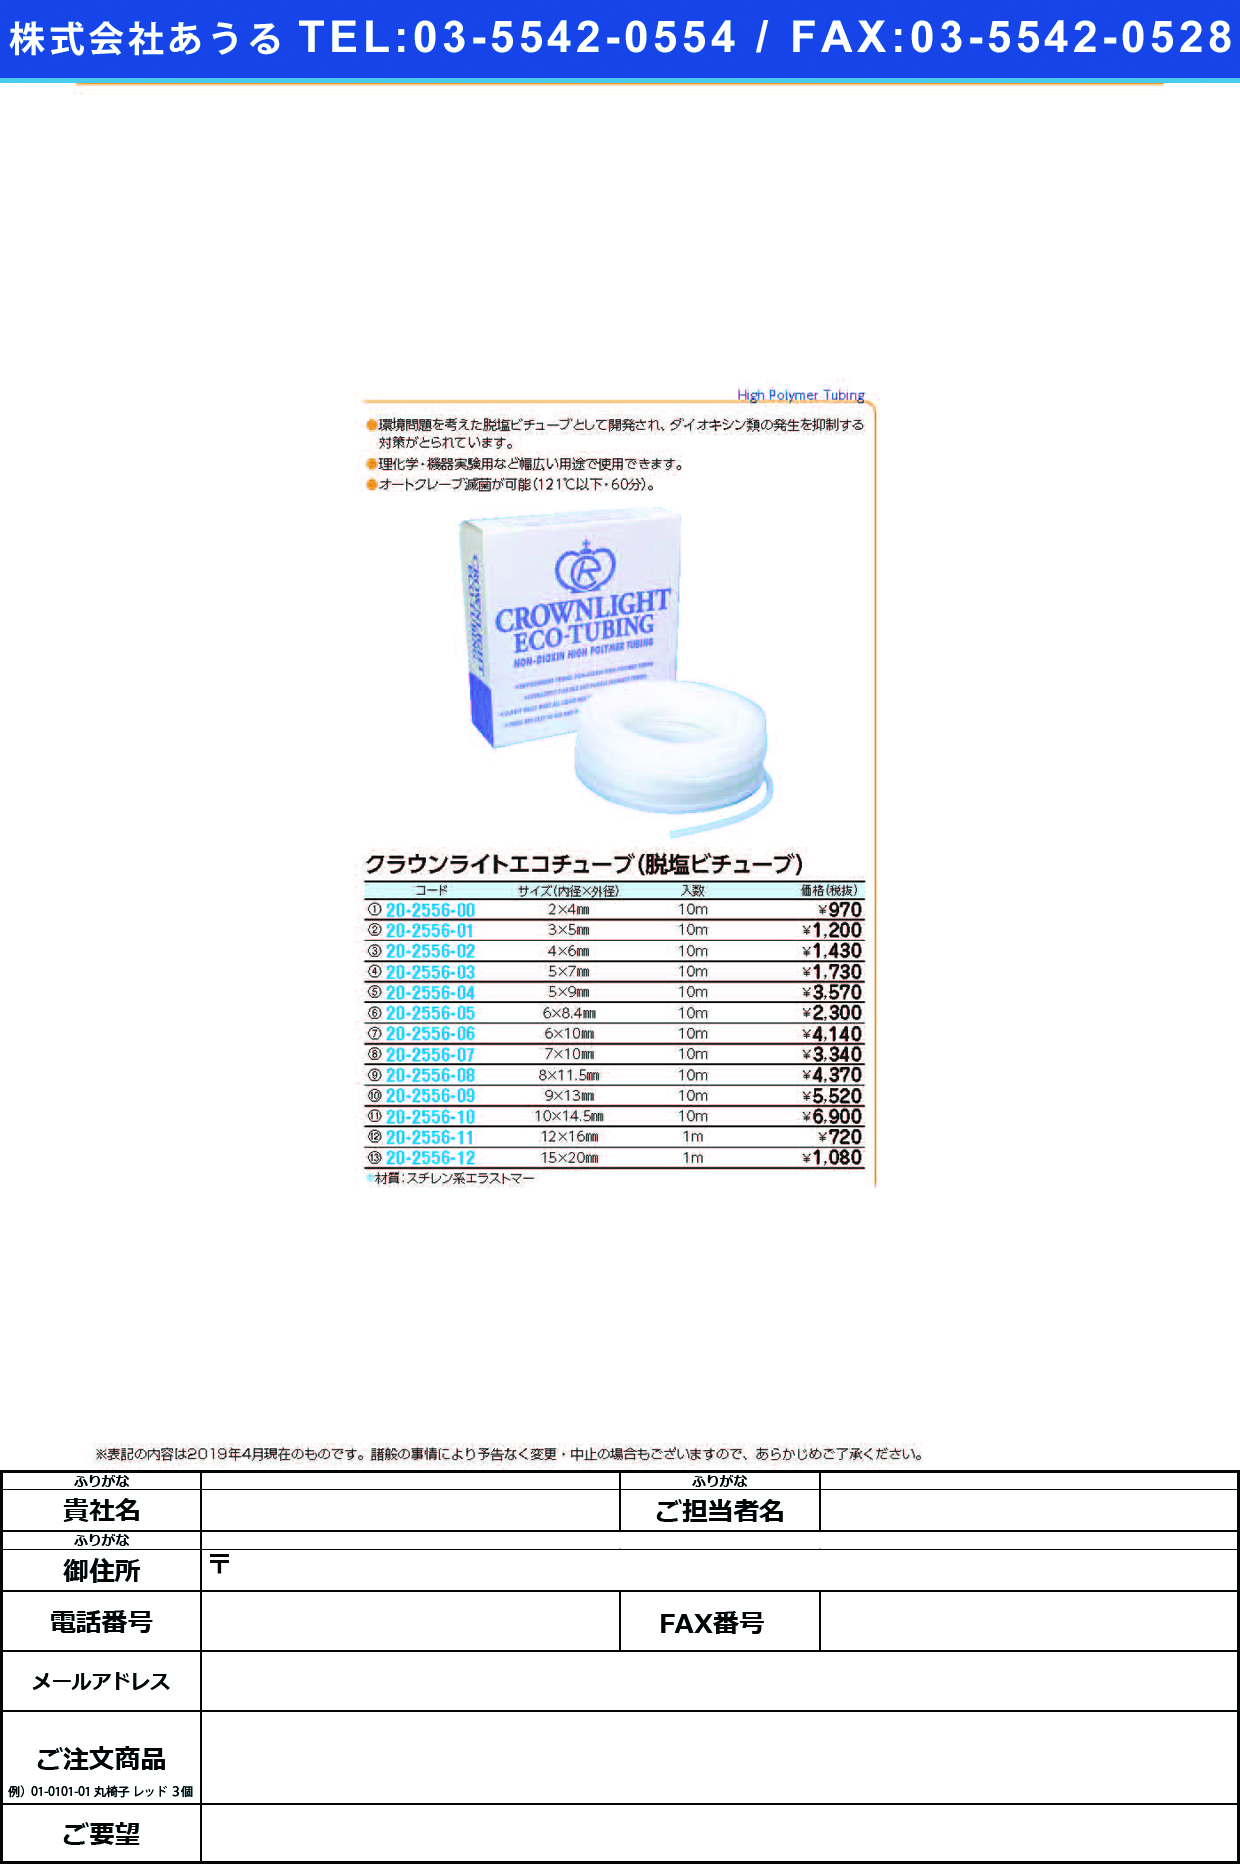 (20-2556-10)クラウンライトエコチューブ 10.0X14.5(10Mｲﾘ) ｸﾗｳﾝﾗｲﾄｴｺﾁｭｰﾌﾞ【1袋単位】【2019年カタログ商品】